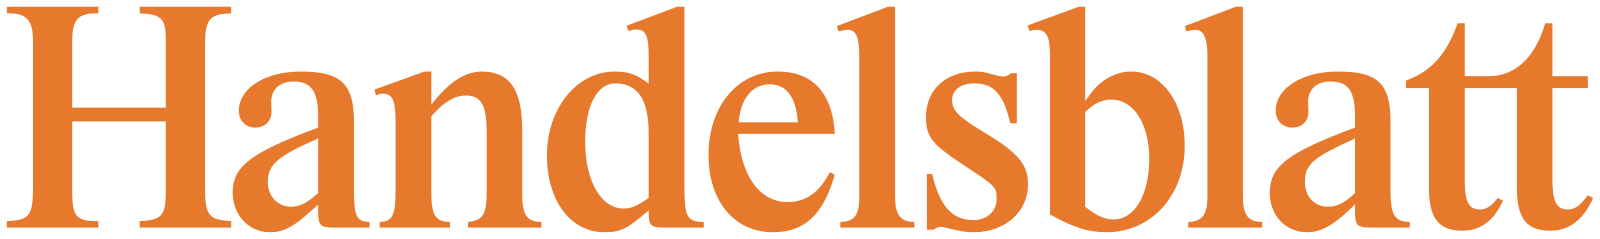 Handelsblatt_logo